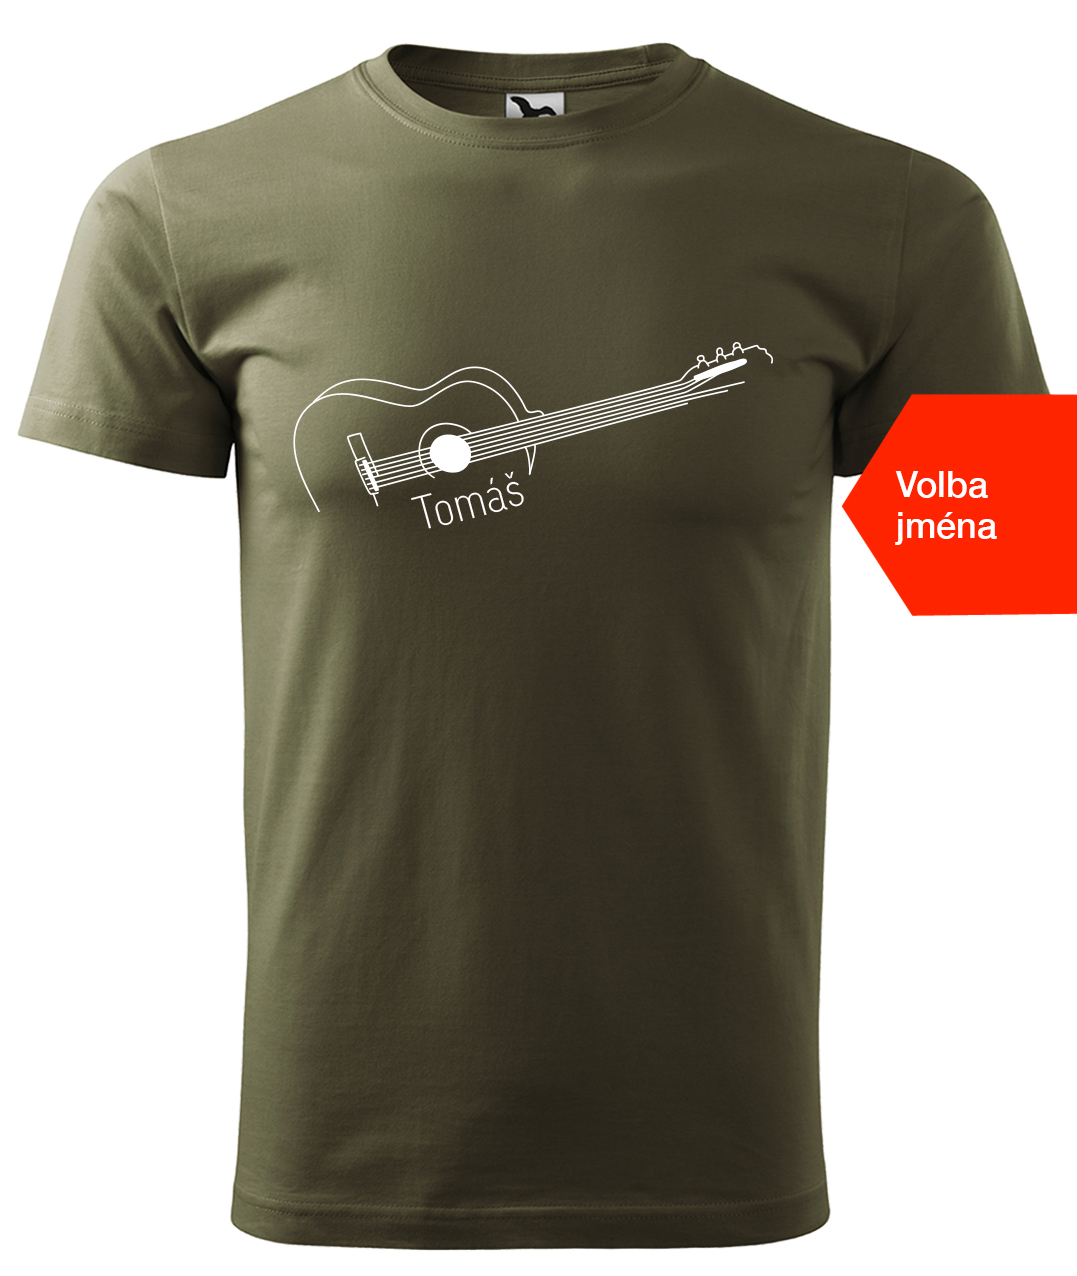 Dětské tričko s kytarou se jménem - Stylizovaná kytara Velikost: 10 let / 146 cm, Barva: Military (69), Délka rukávu: Krátký rukáv